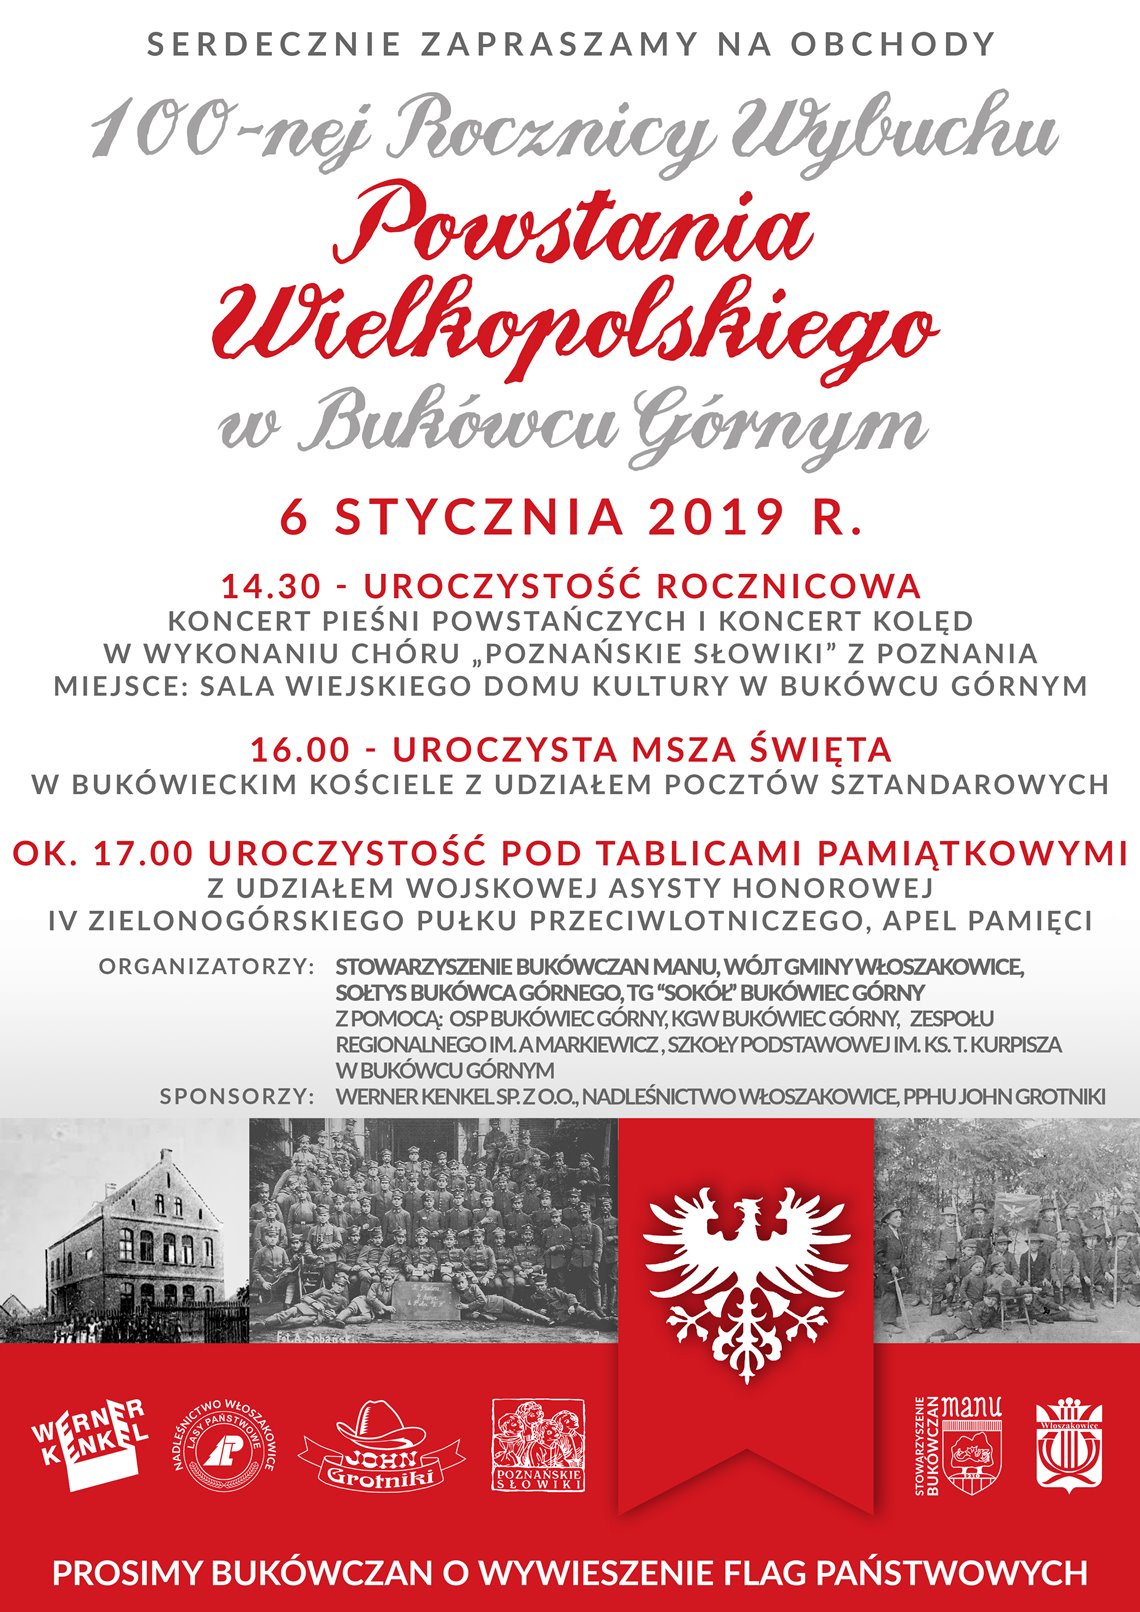 100-na Rocznica Wybuchu Powstania Wielkopolskiego - zaproszenie